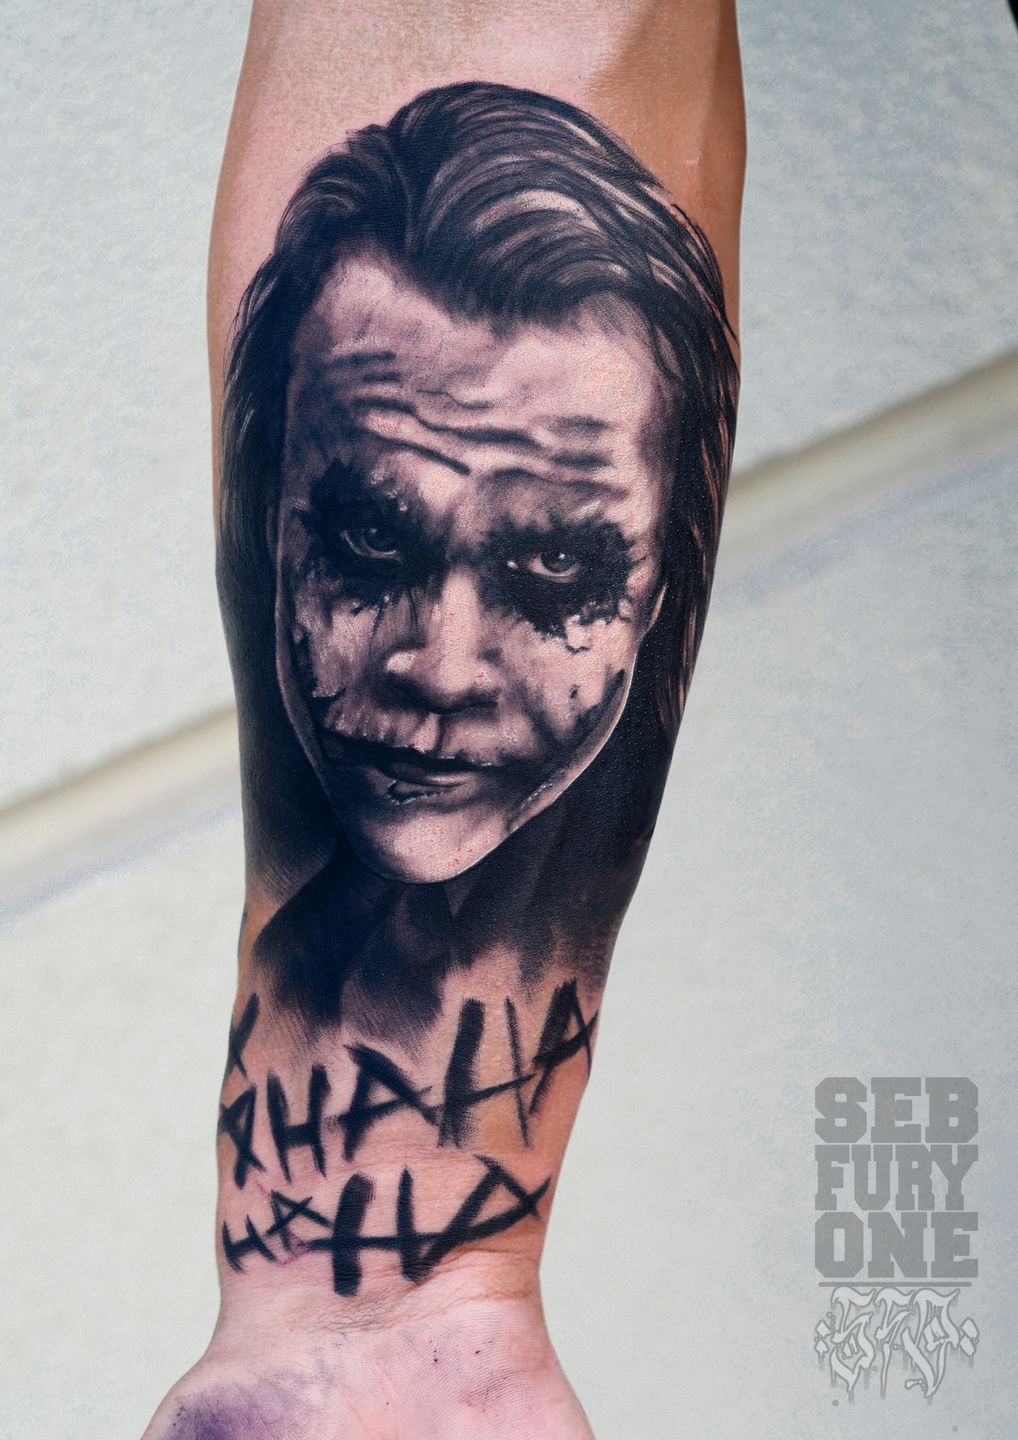 Batman Joker Tattoo - Best Tattoo Ideas Gallery